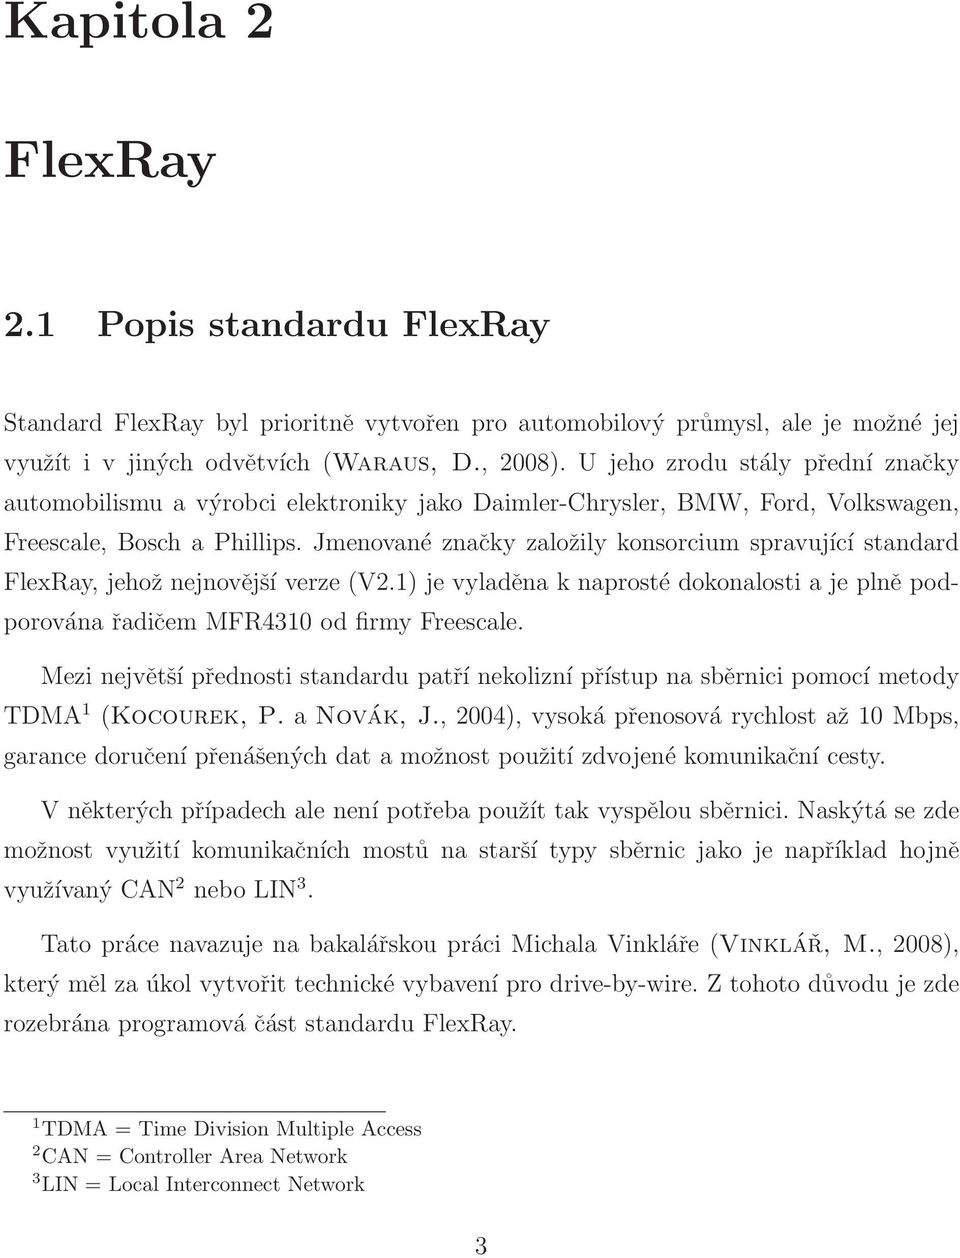 Jmenované značky založily konsorcium spravující standard FlexRay, jehož nejnovější verze (V2.1) je vyladěna k naprosté dokonalosti a je plně podporována řadičem MFR4310 od firmy Freescale.